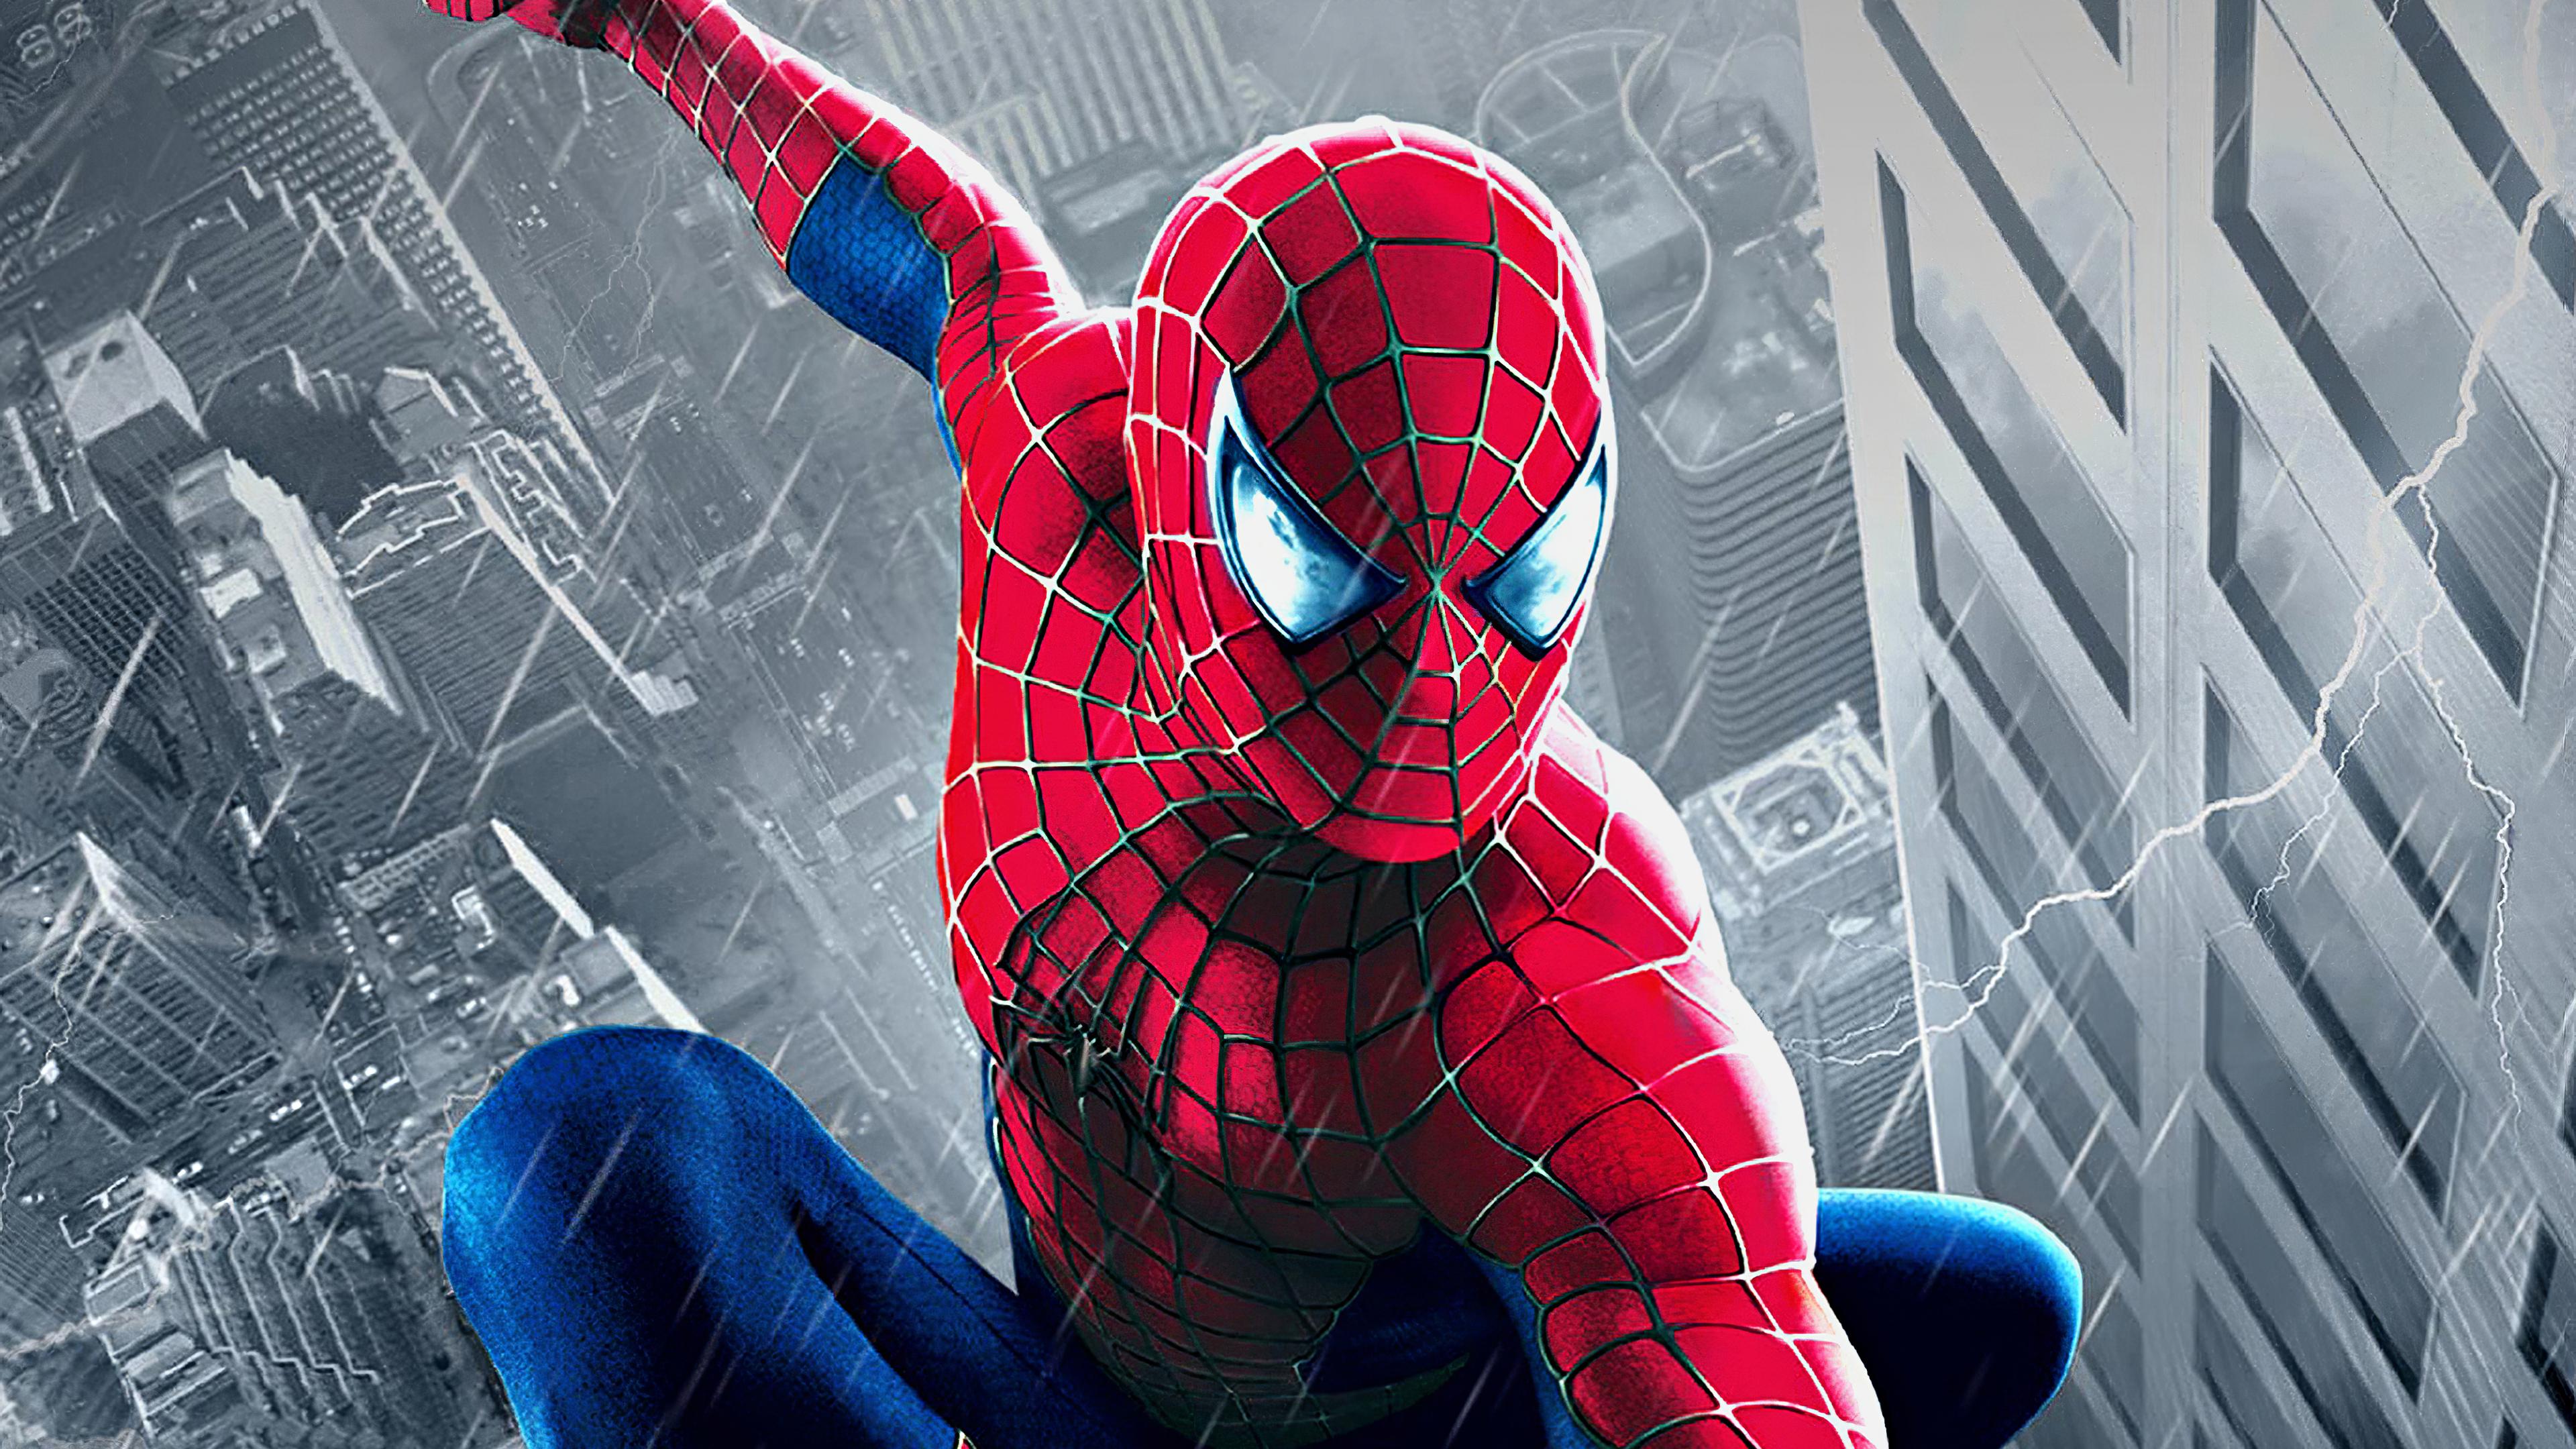 3840 x 2160 · jpeg - Spiderman spider man wallpaper phone hd 4k, Spider man wallpaper 4k hd ...